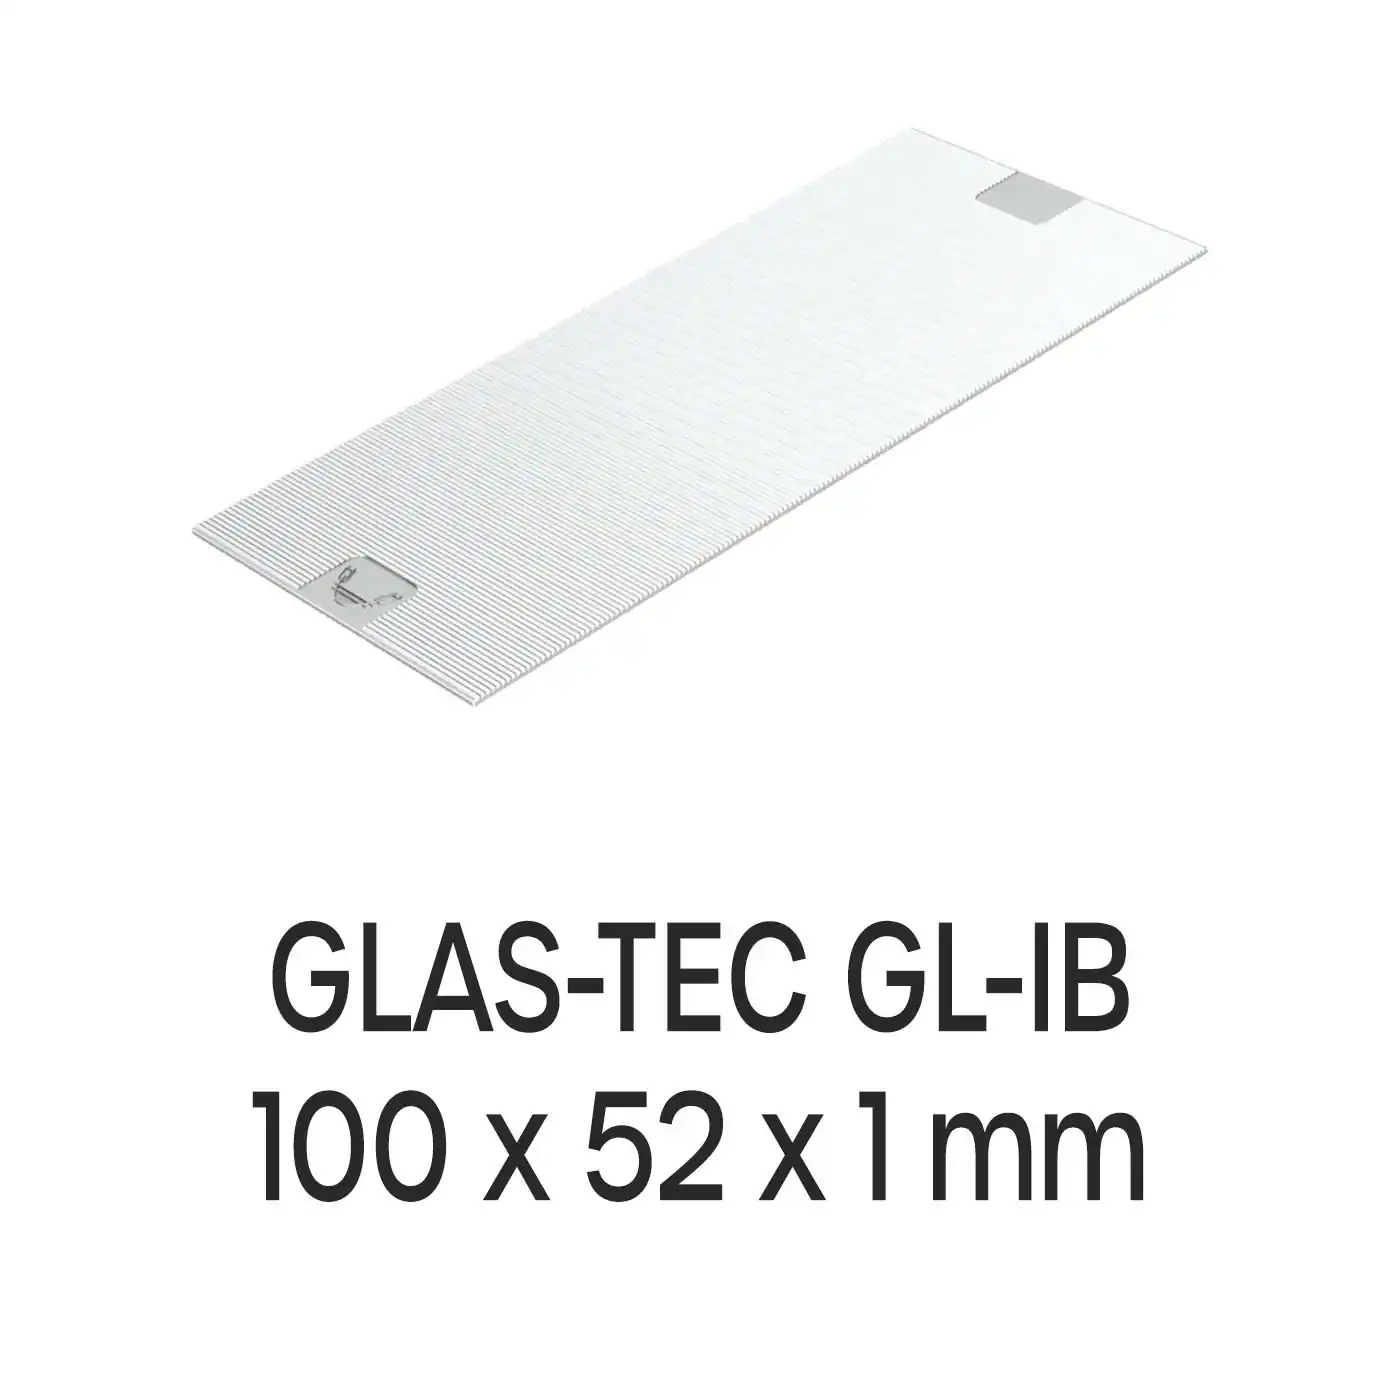 Roto Verglasungsklotz GLAS-TEC GL-IB, 100 x 52 x 1 mm, schwarz, 500 Stück